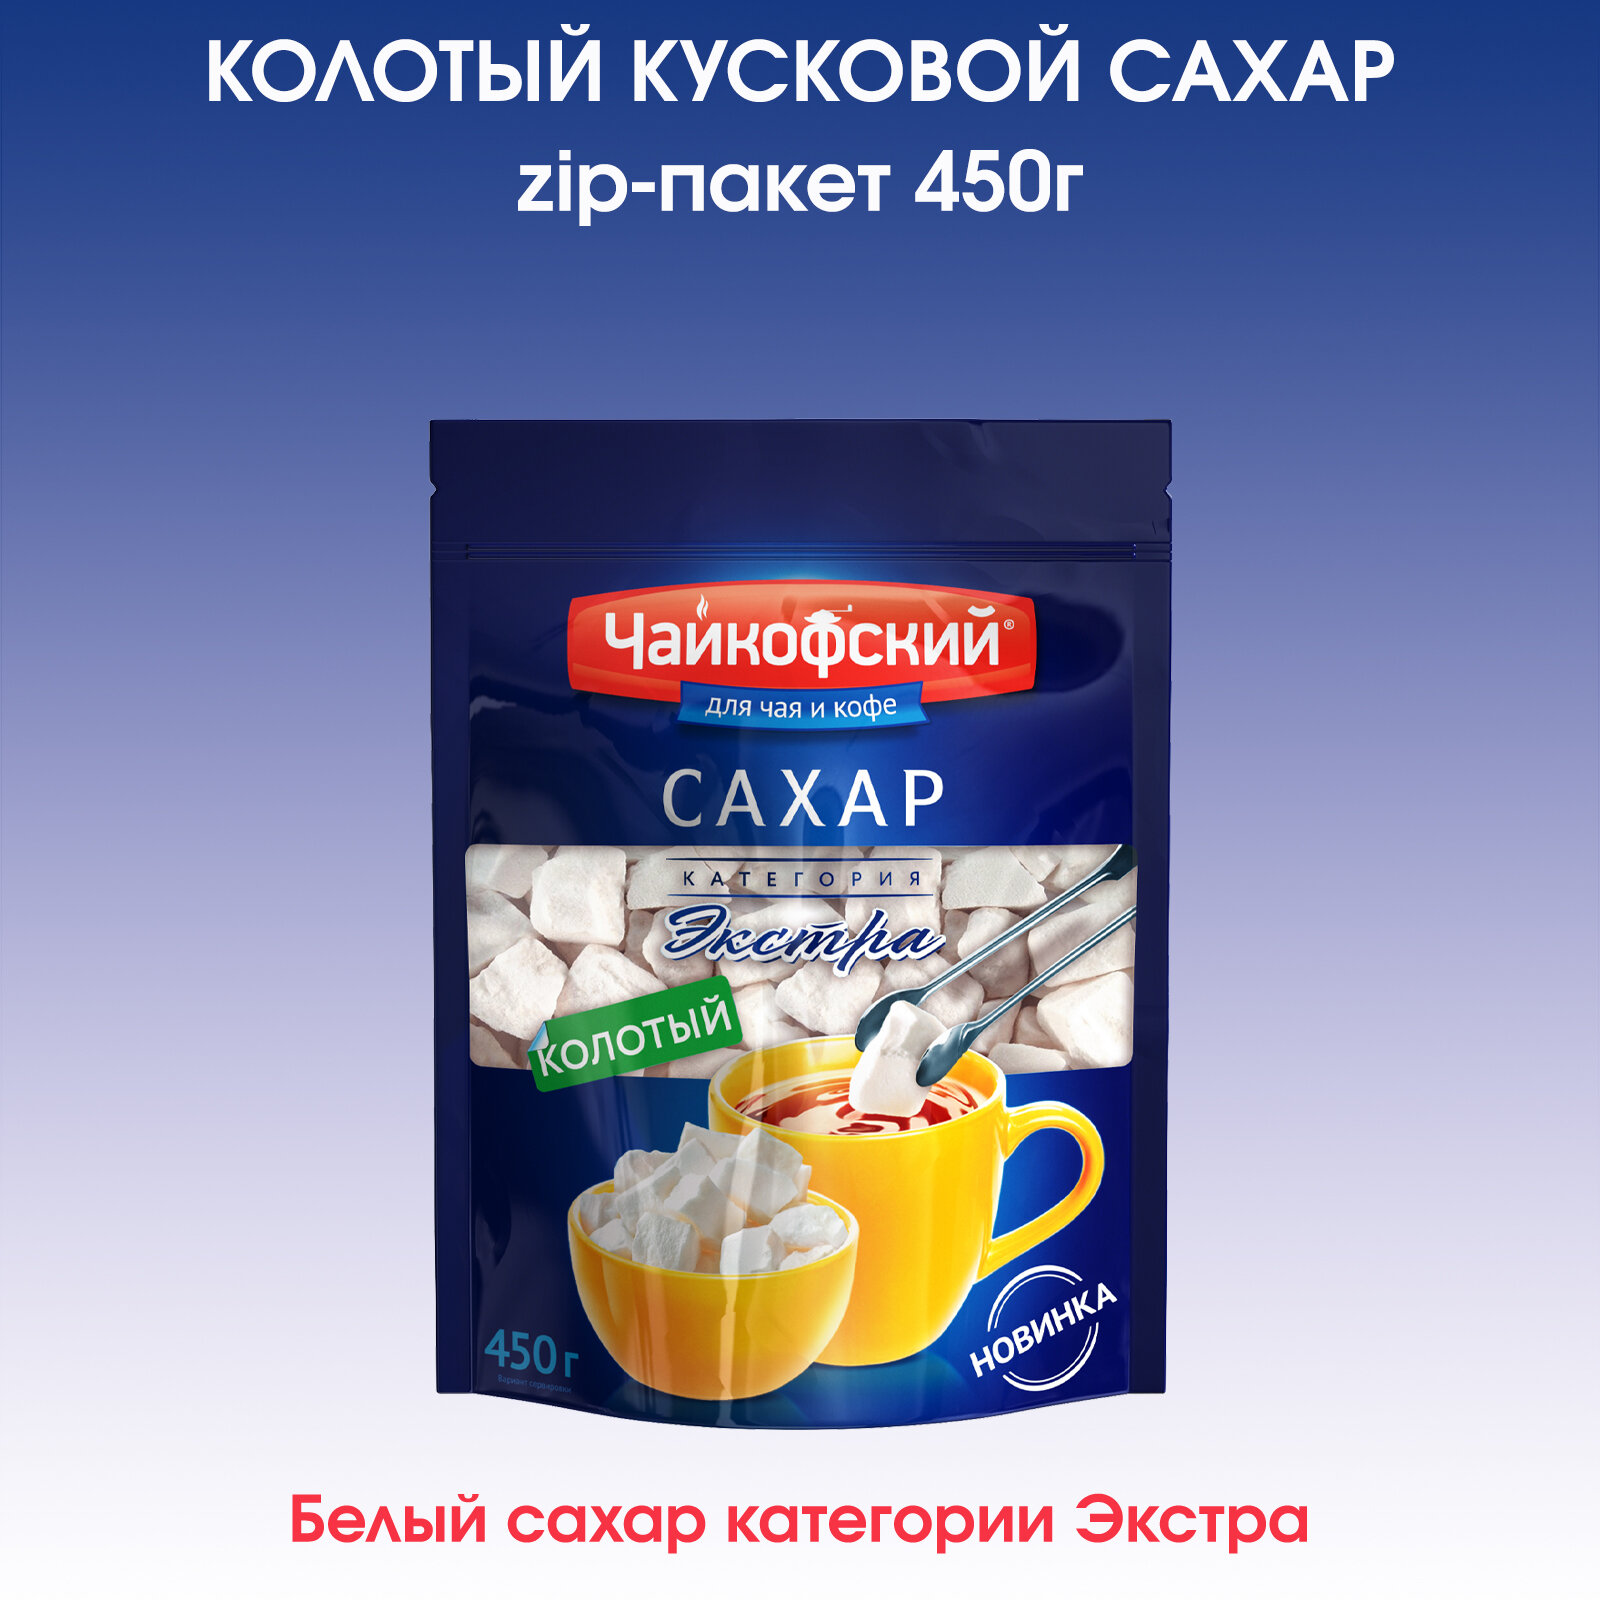 Сахар кусковой колотый "Чайкофский", 450г.